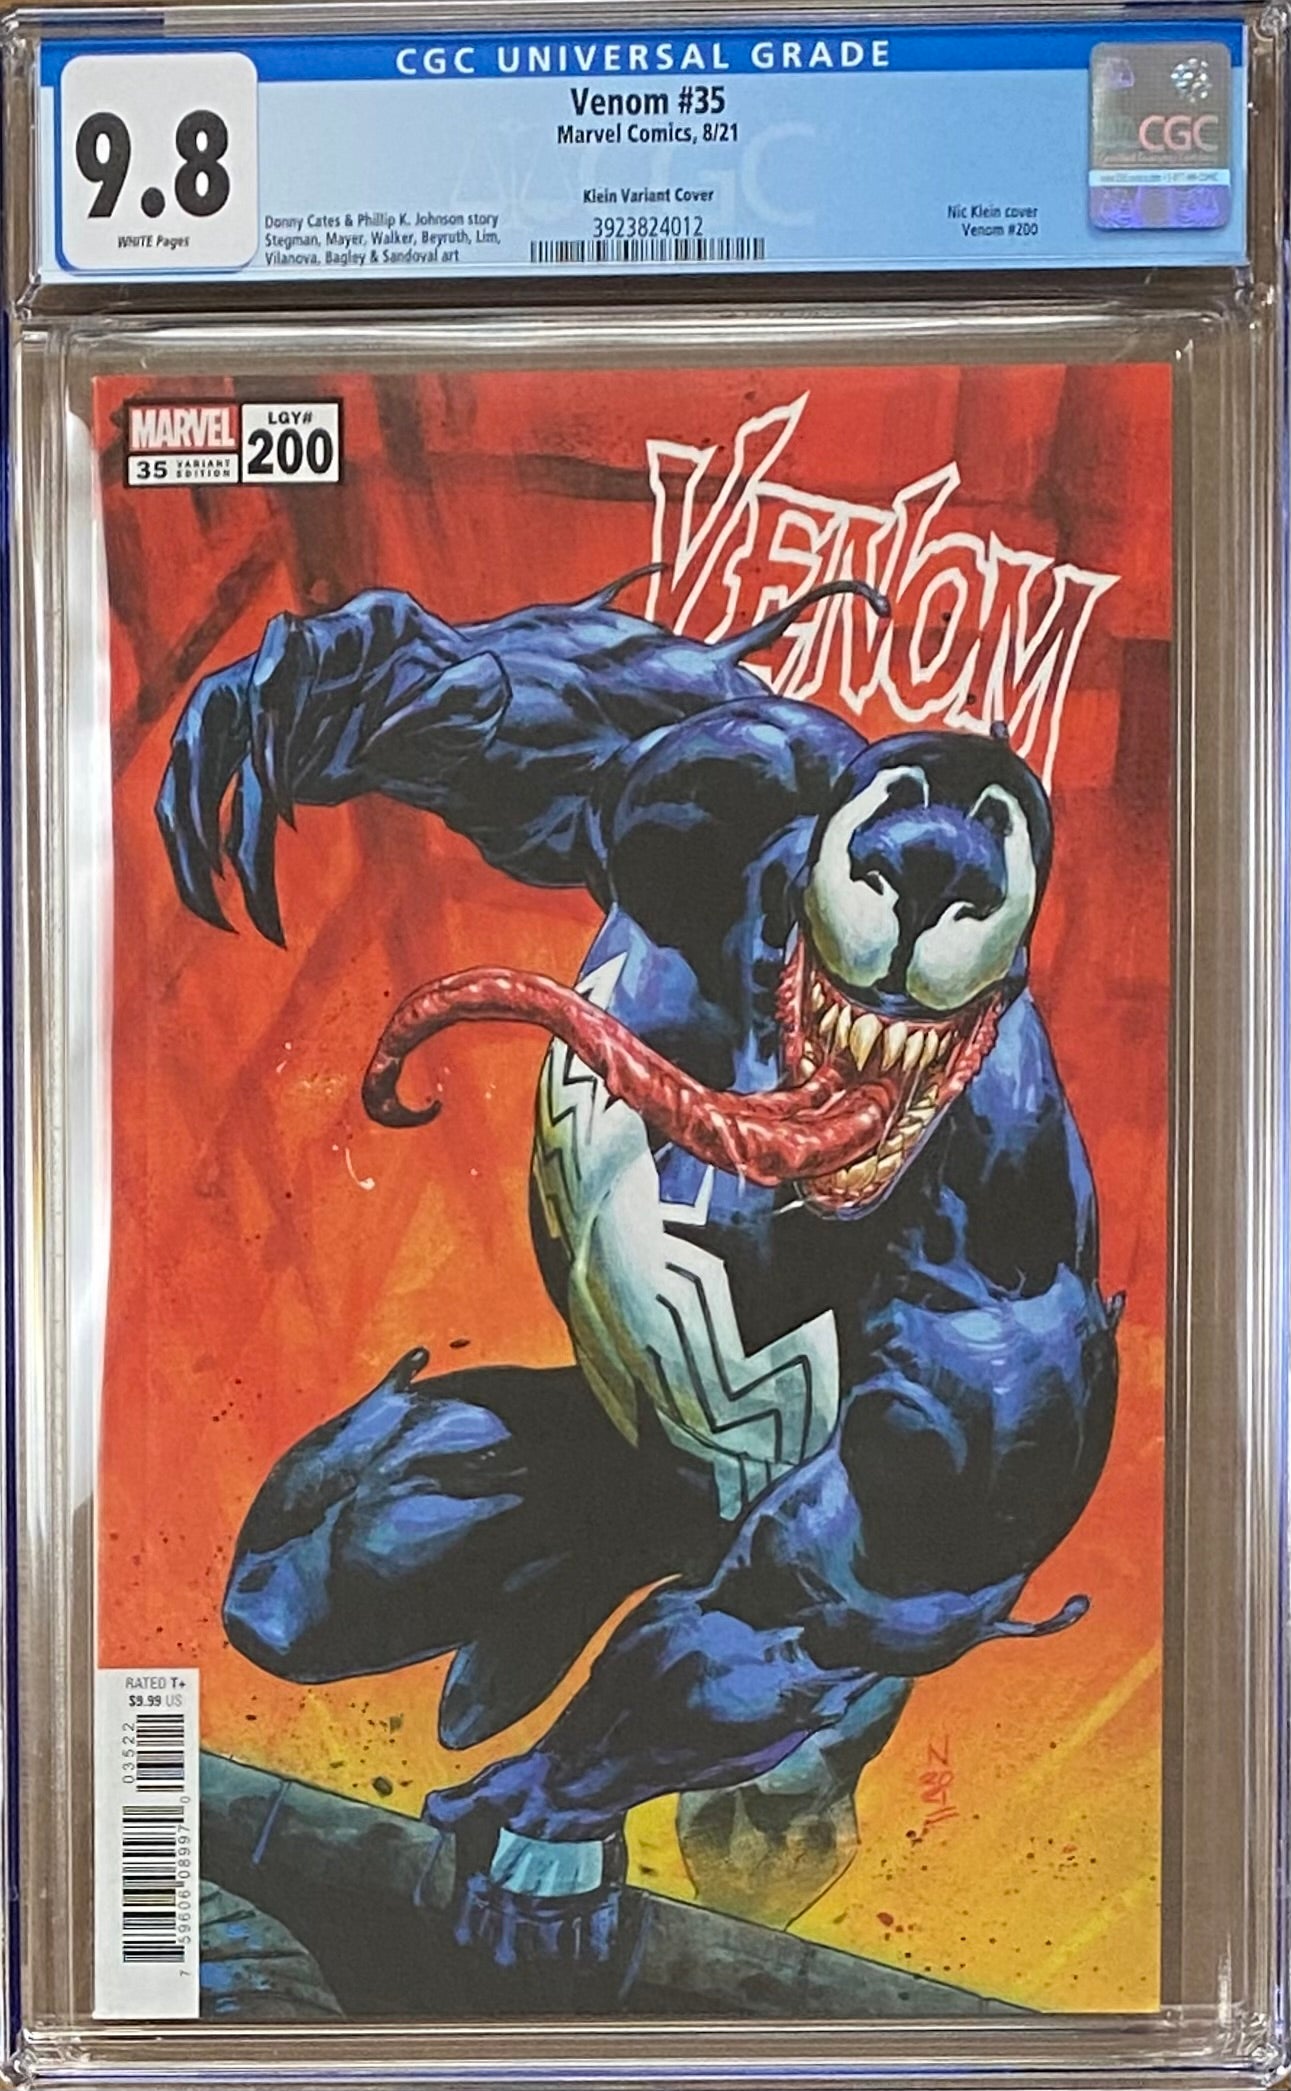 Venom #35 (#200) Klein Variant CGC 9.8